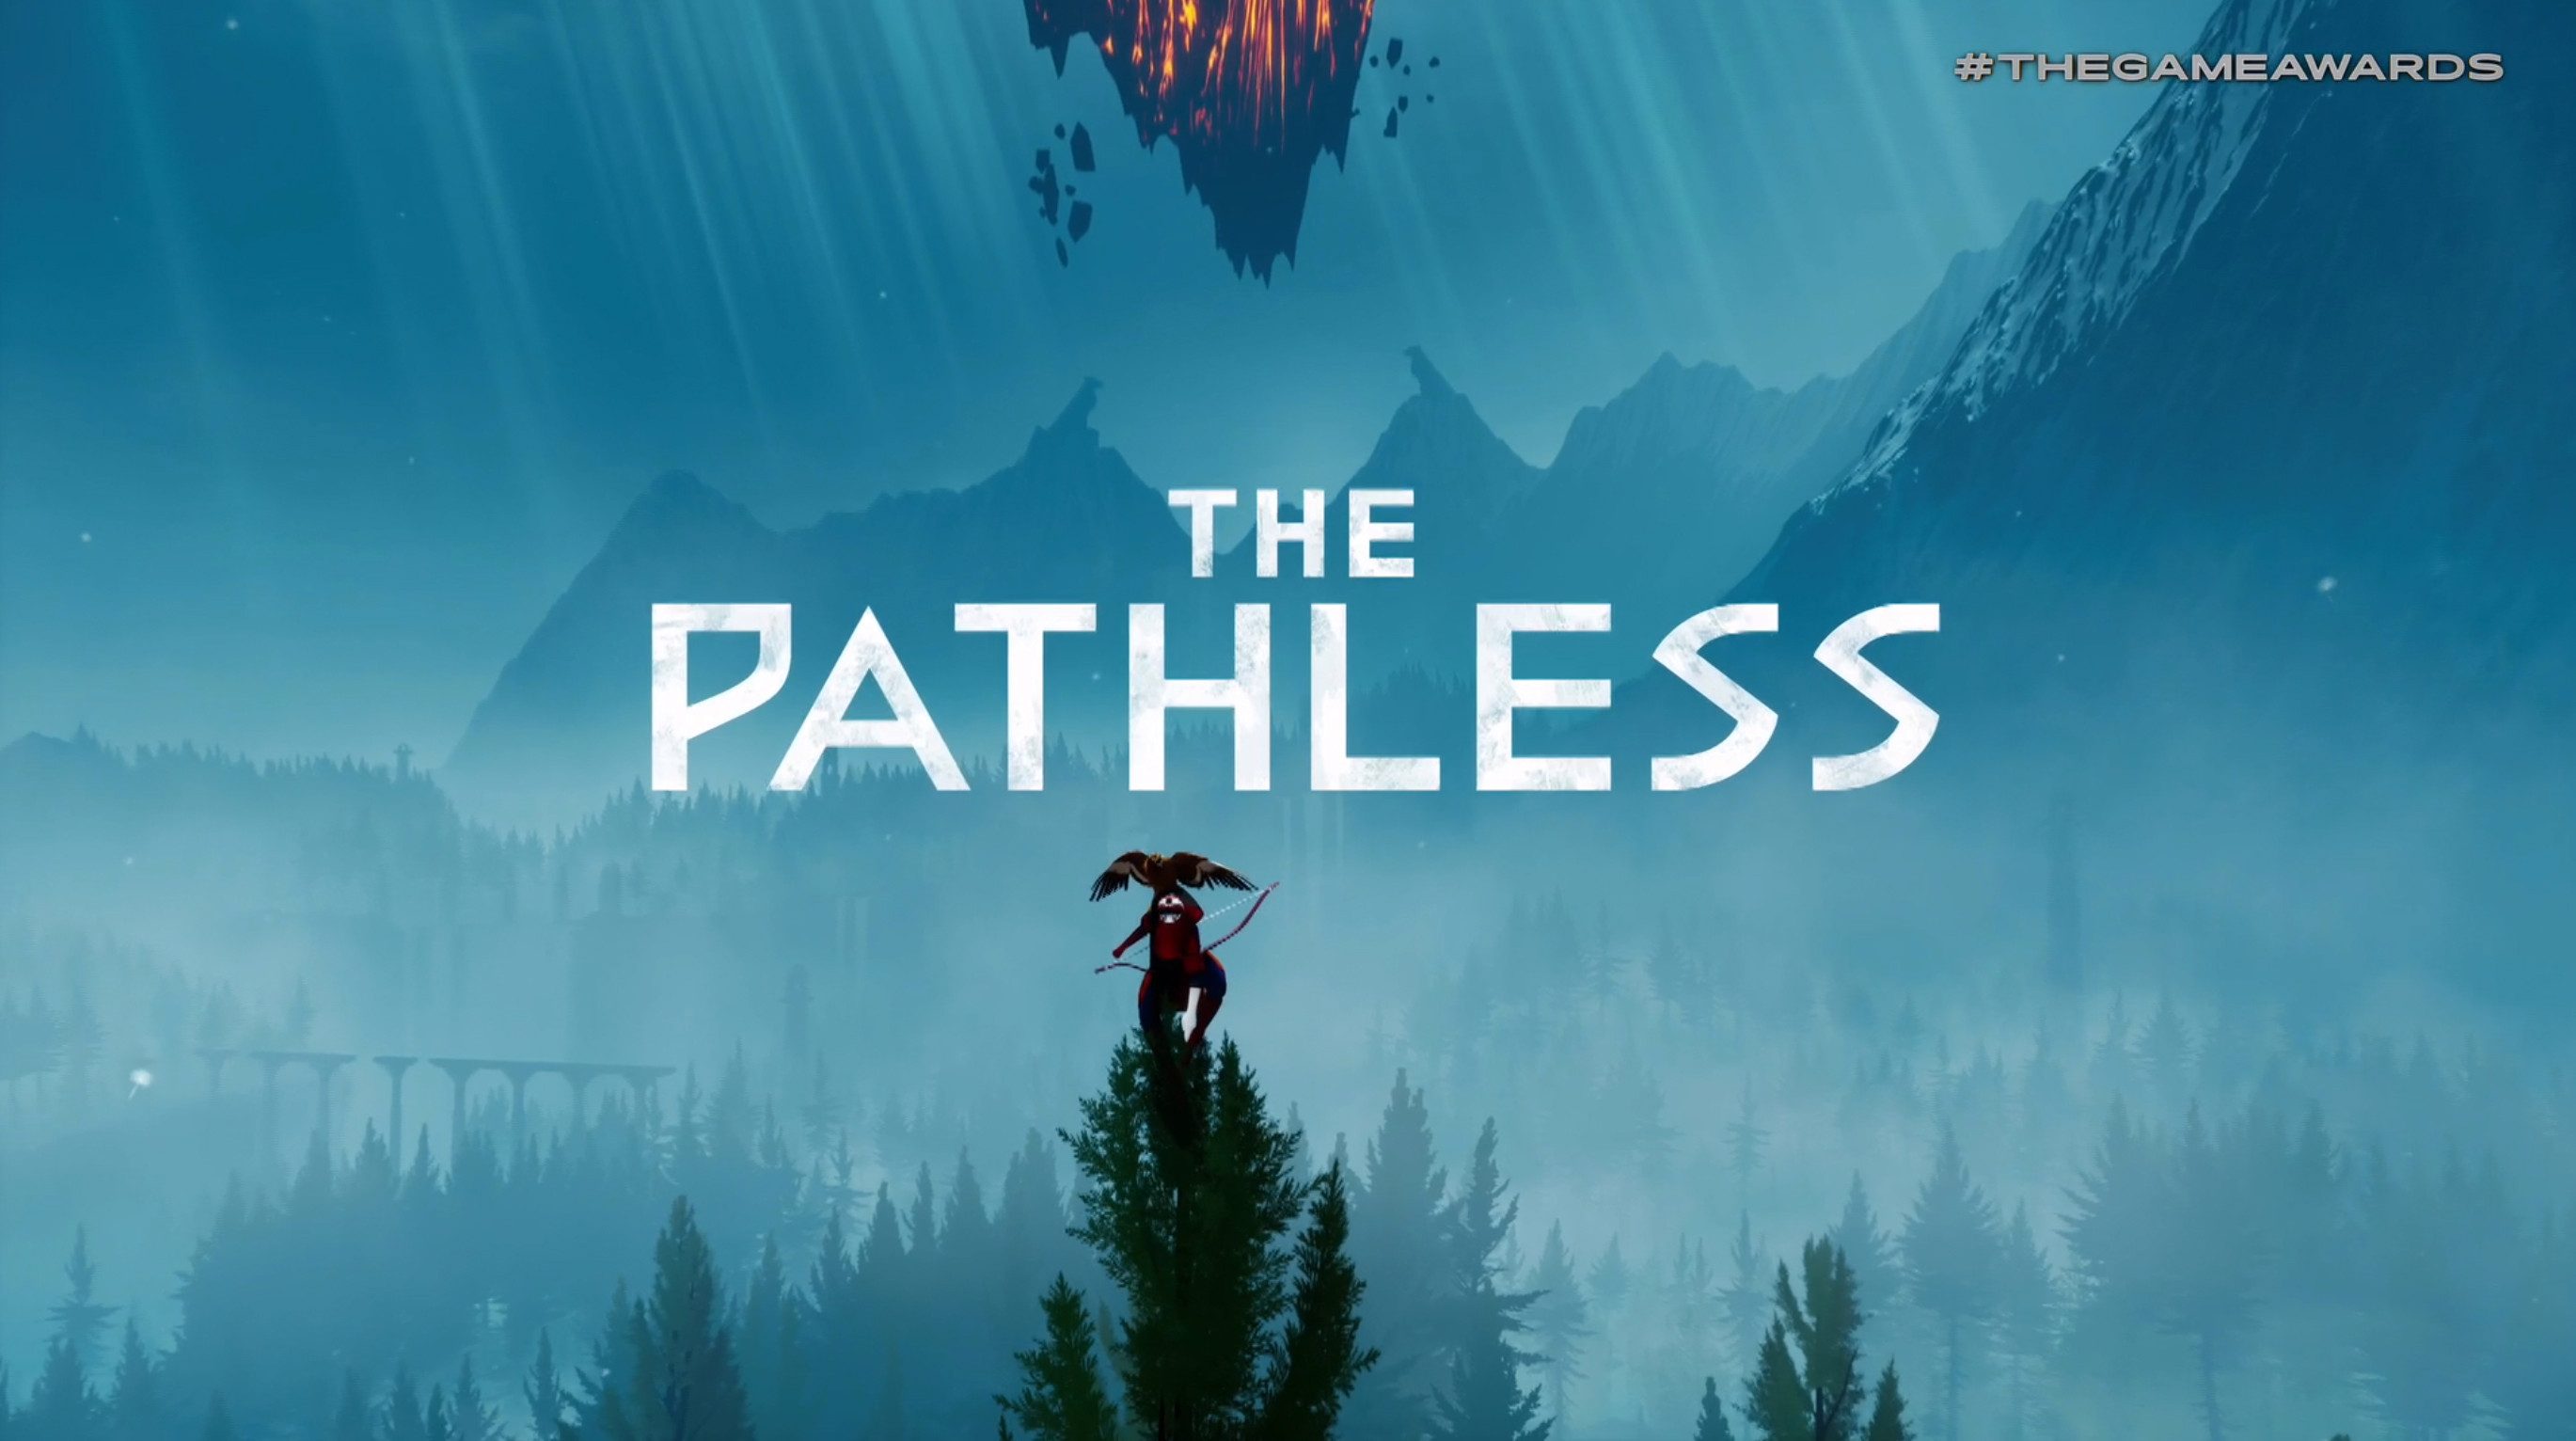 The pathless. Pathless игра. The pathless обложка. The pathless logo. The pathless геймплей.